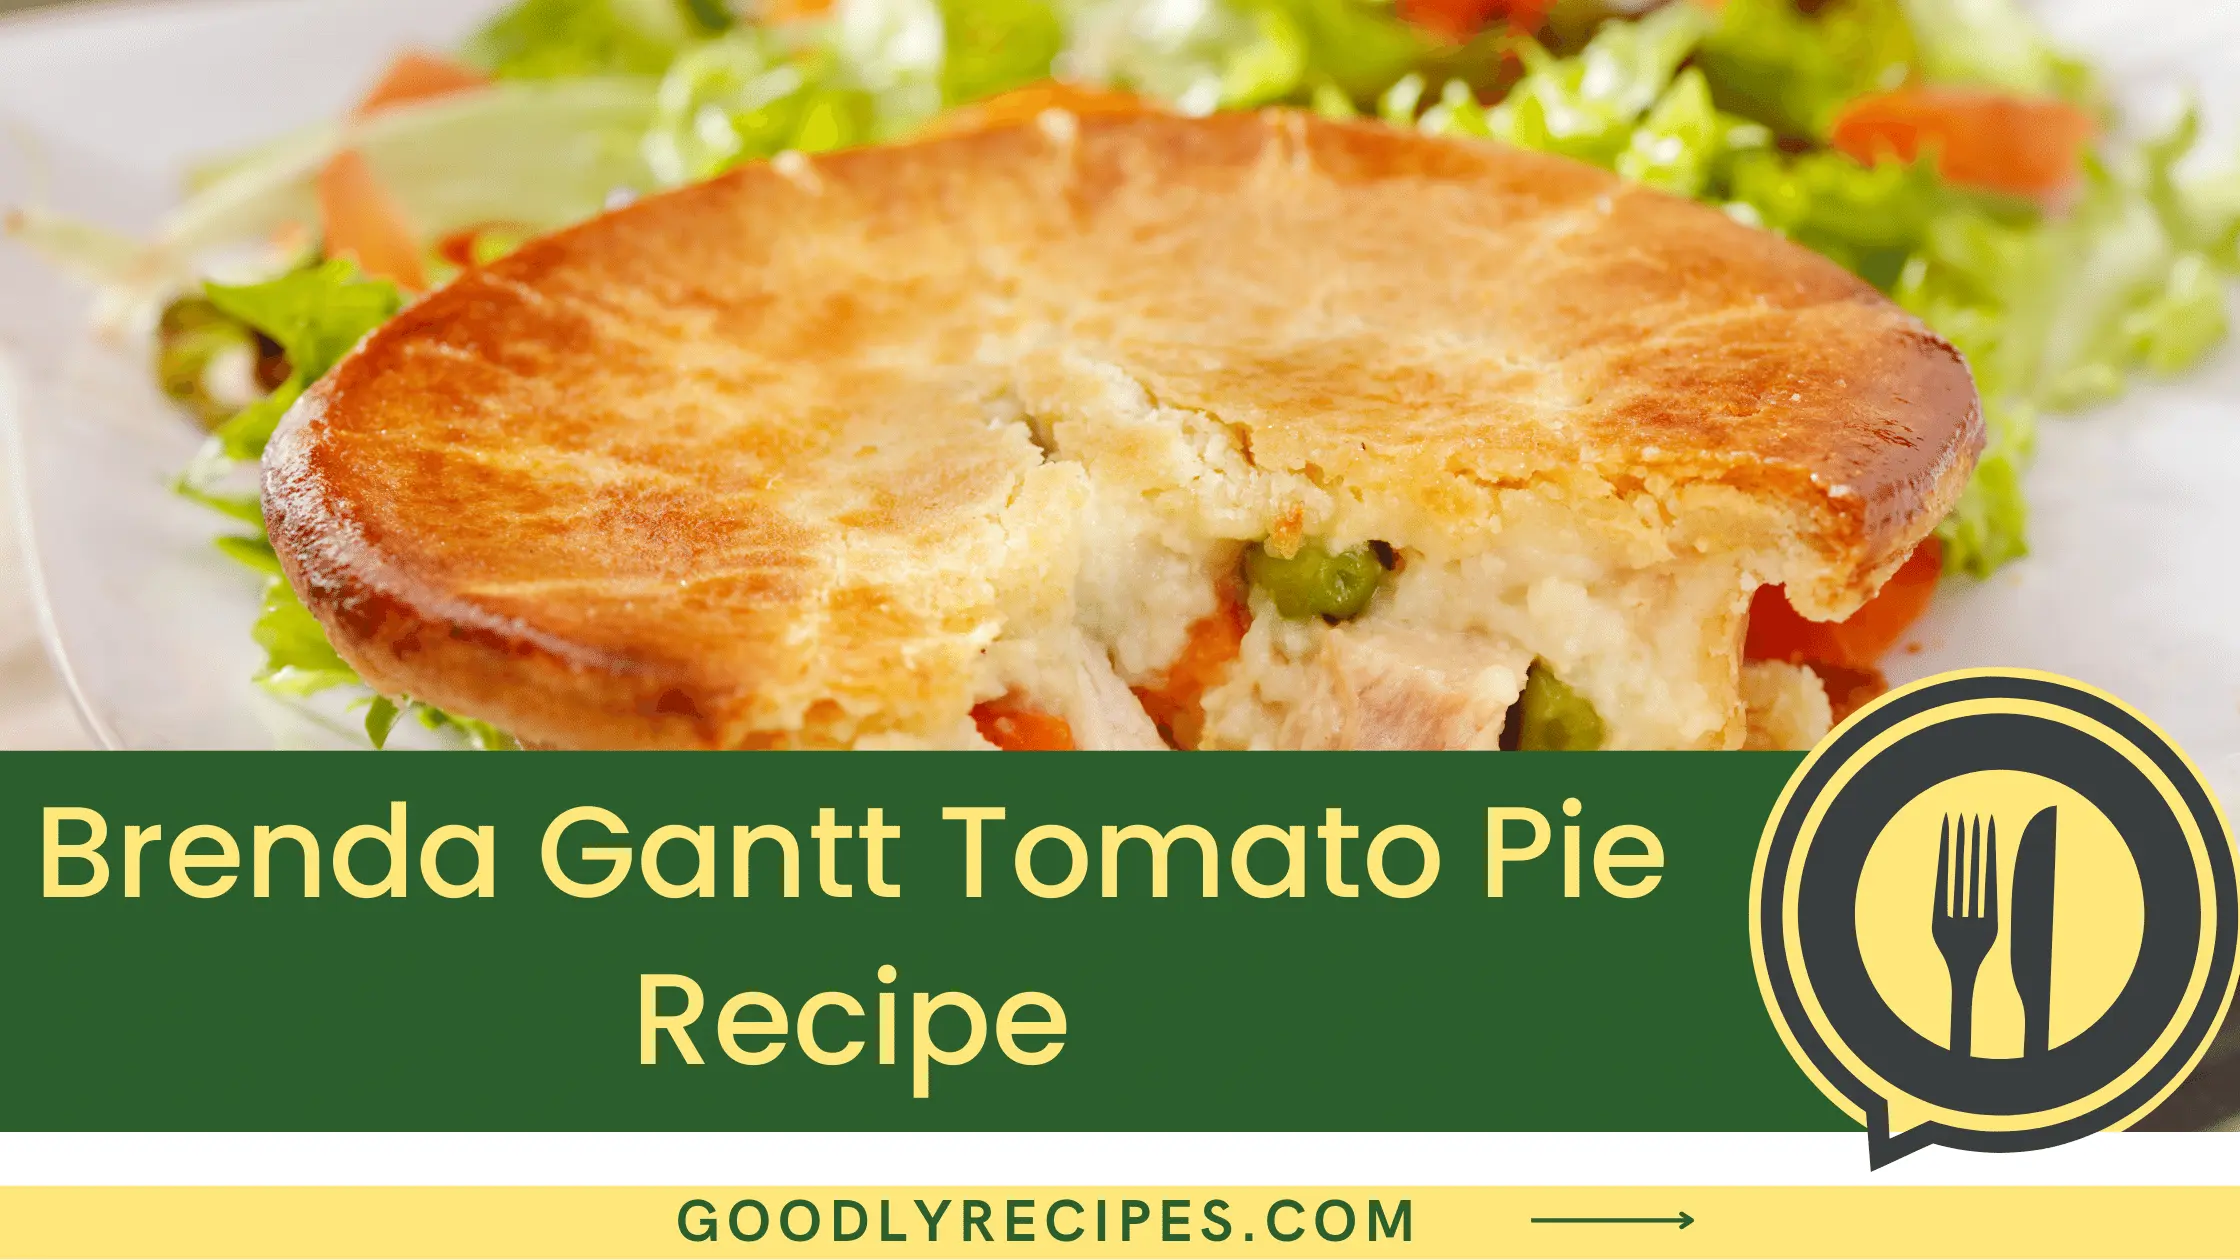 Brenda Gantt Tomato Pie Recipe - For Food Lovers